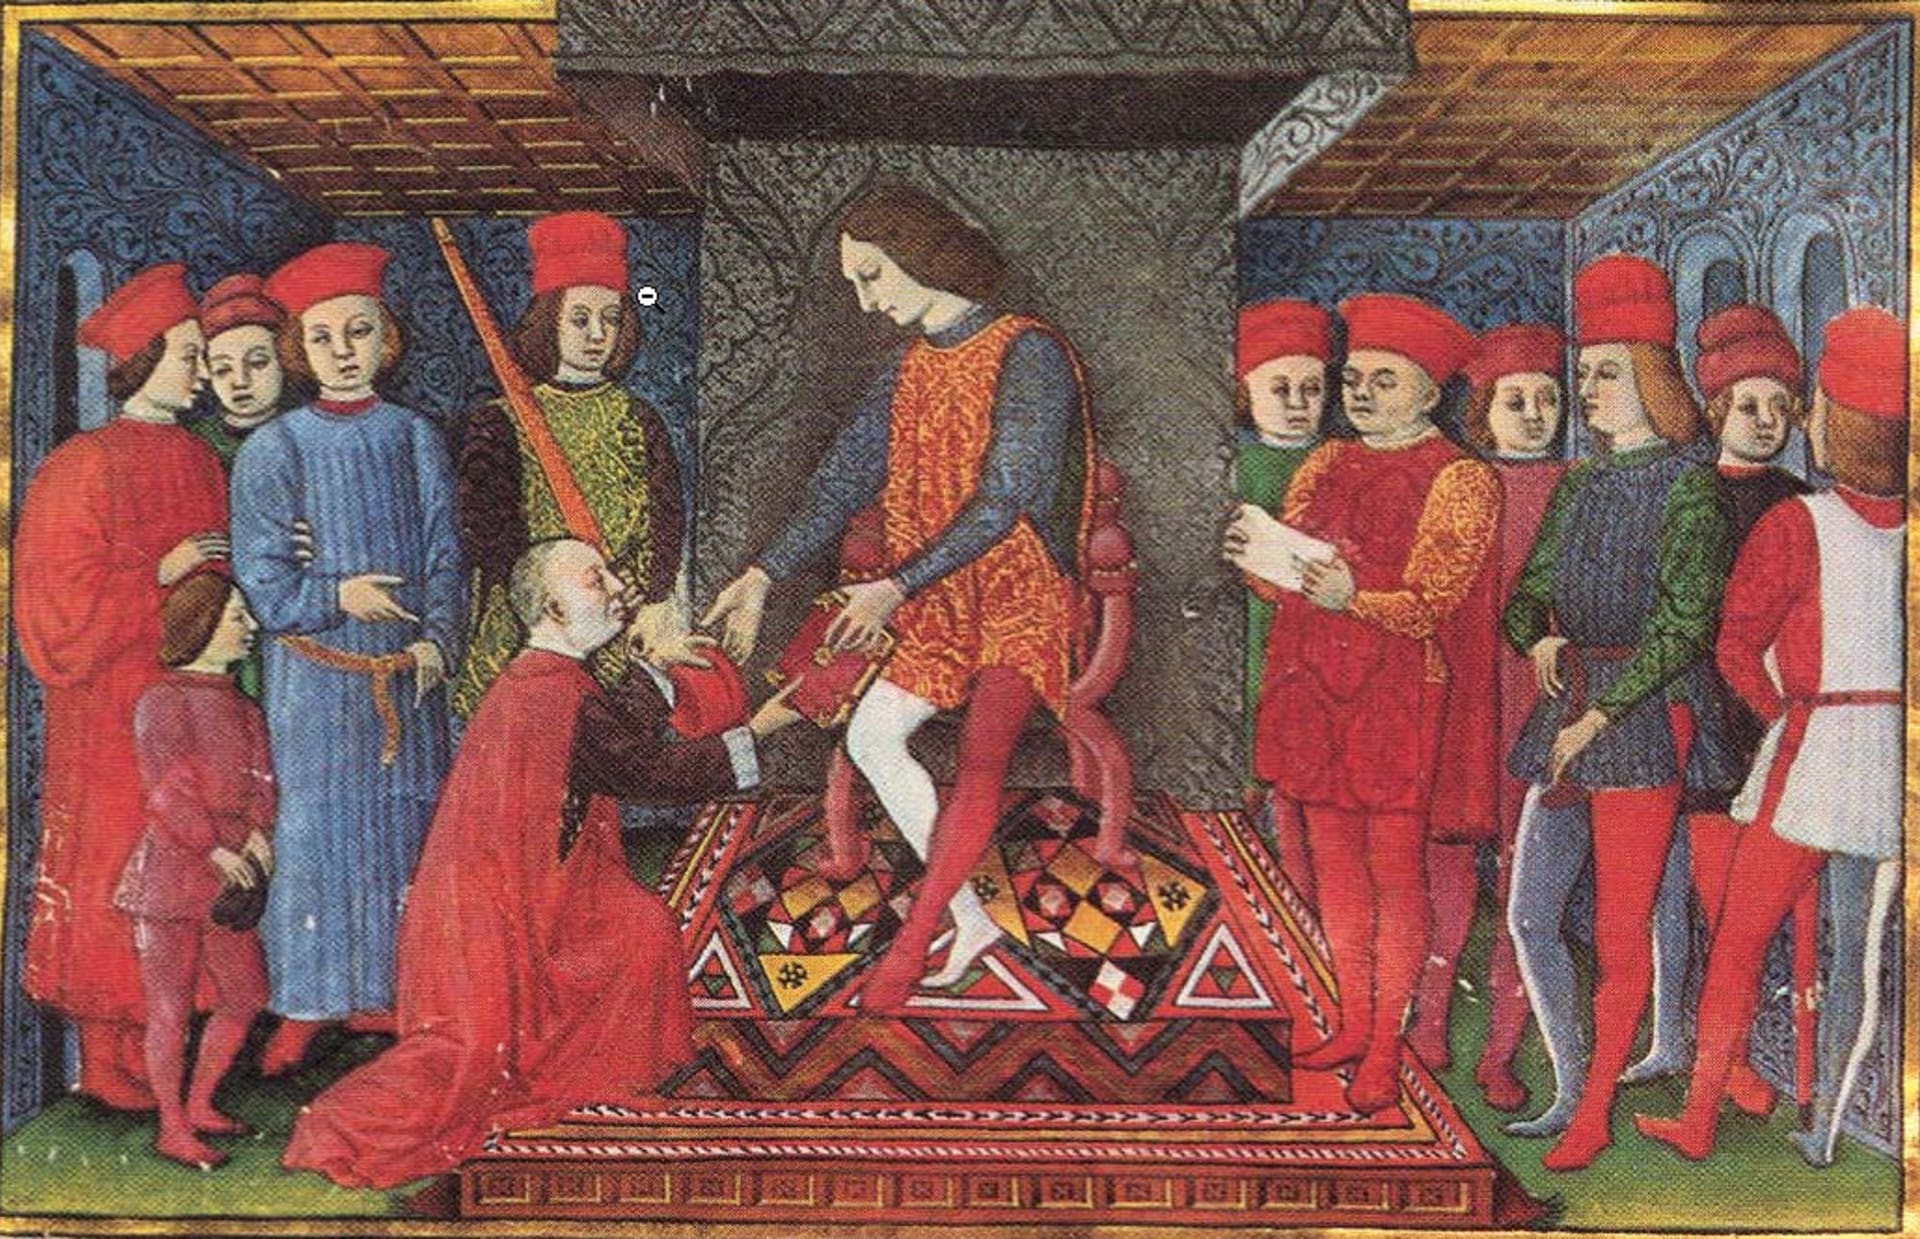 Milánský vévoda Galeazzo Maria Sforza patřil rozhodně k těm krutějším vladařům středověku.